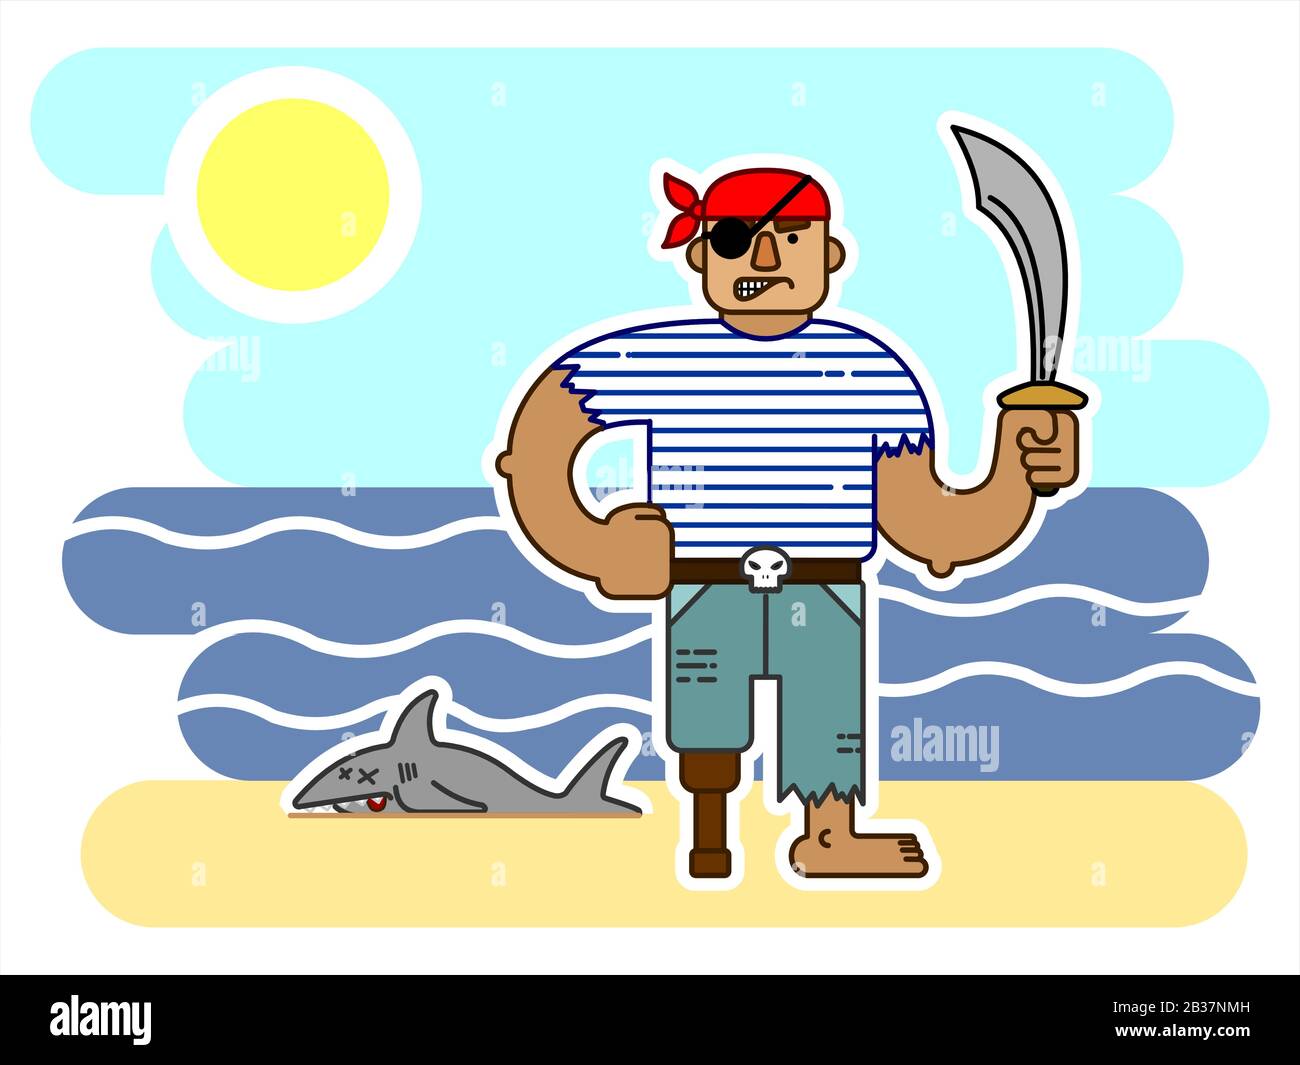 Einäugiger Pirat Mit SÄBEL, In EINER Bandana, Mit EINEM Prothetischen Bein aus Holz, Cartoon-Charakter. Wütende Piraten Am Meer, in der Nähe EINES toten Haifisches. Zum Drucken Stock Vektor